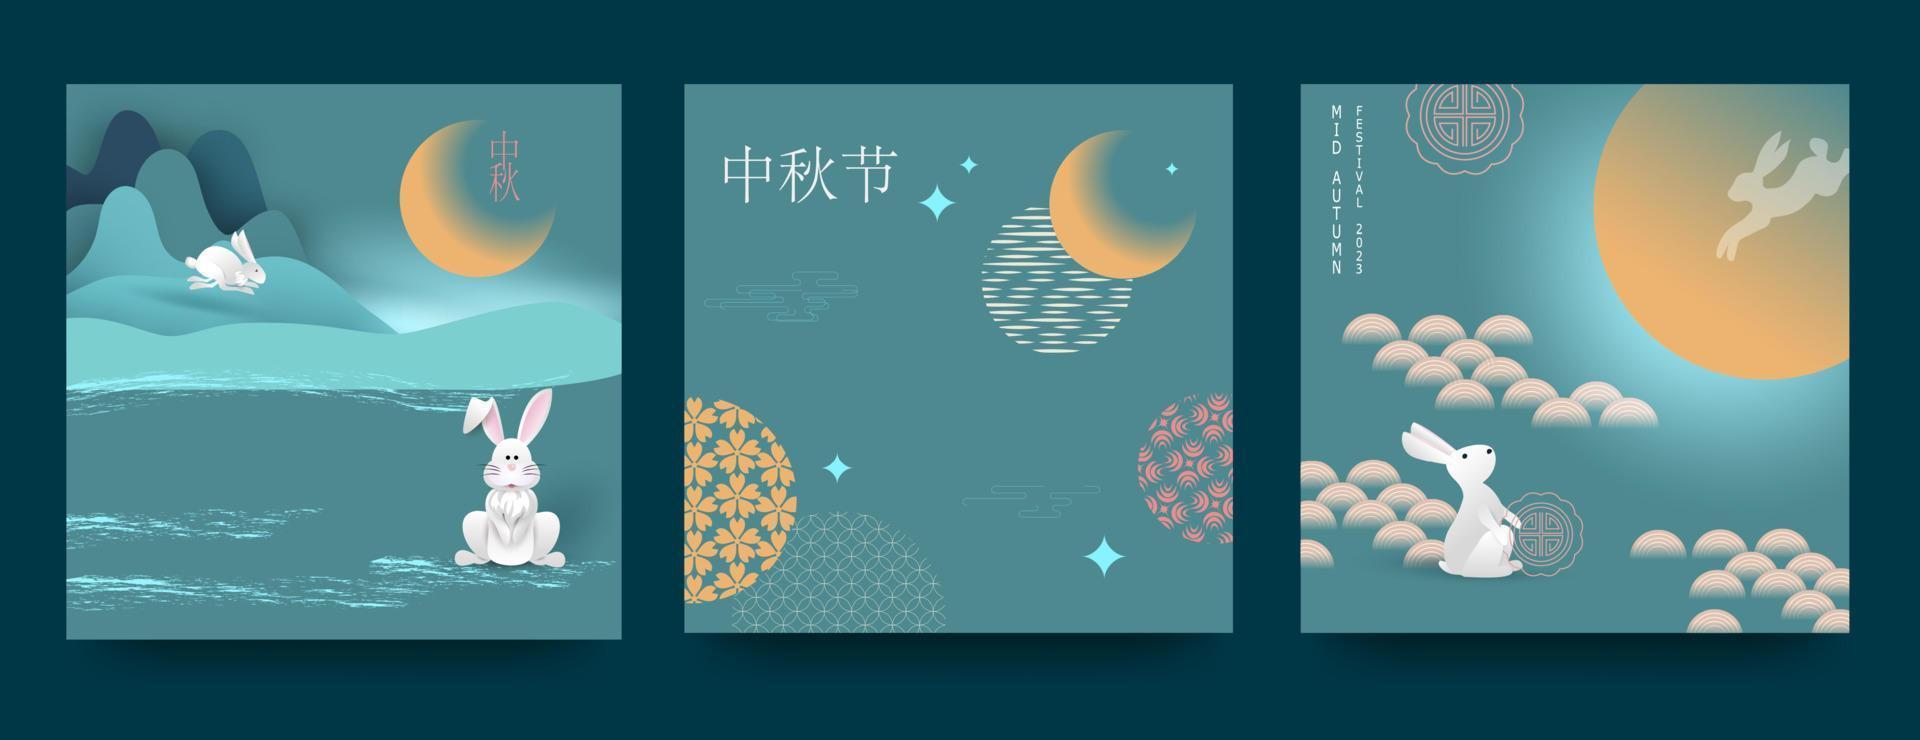 conjunto de fondos, tarjetas de felicitación, afiches, portadas de vacaciones con luna, pastel de luna y lindos conejitos. traducción al chino - festival del medio otoño. vector